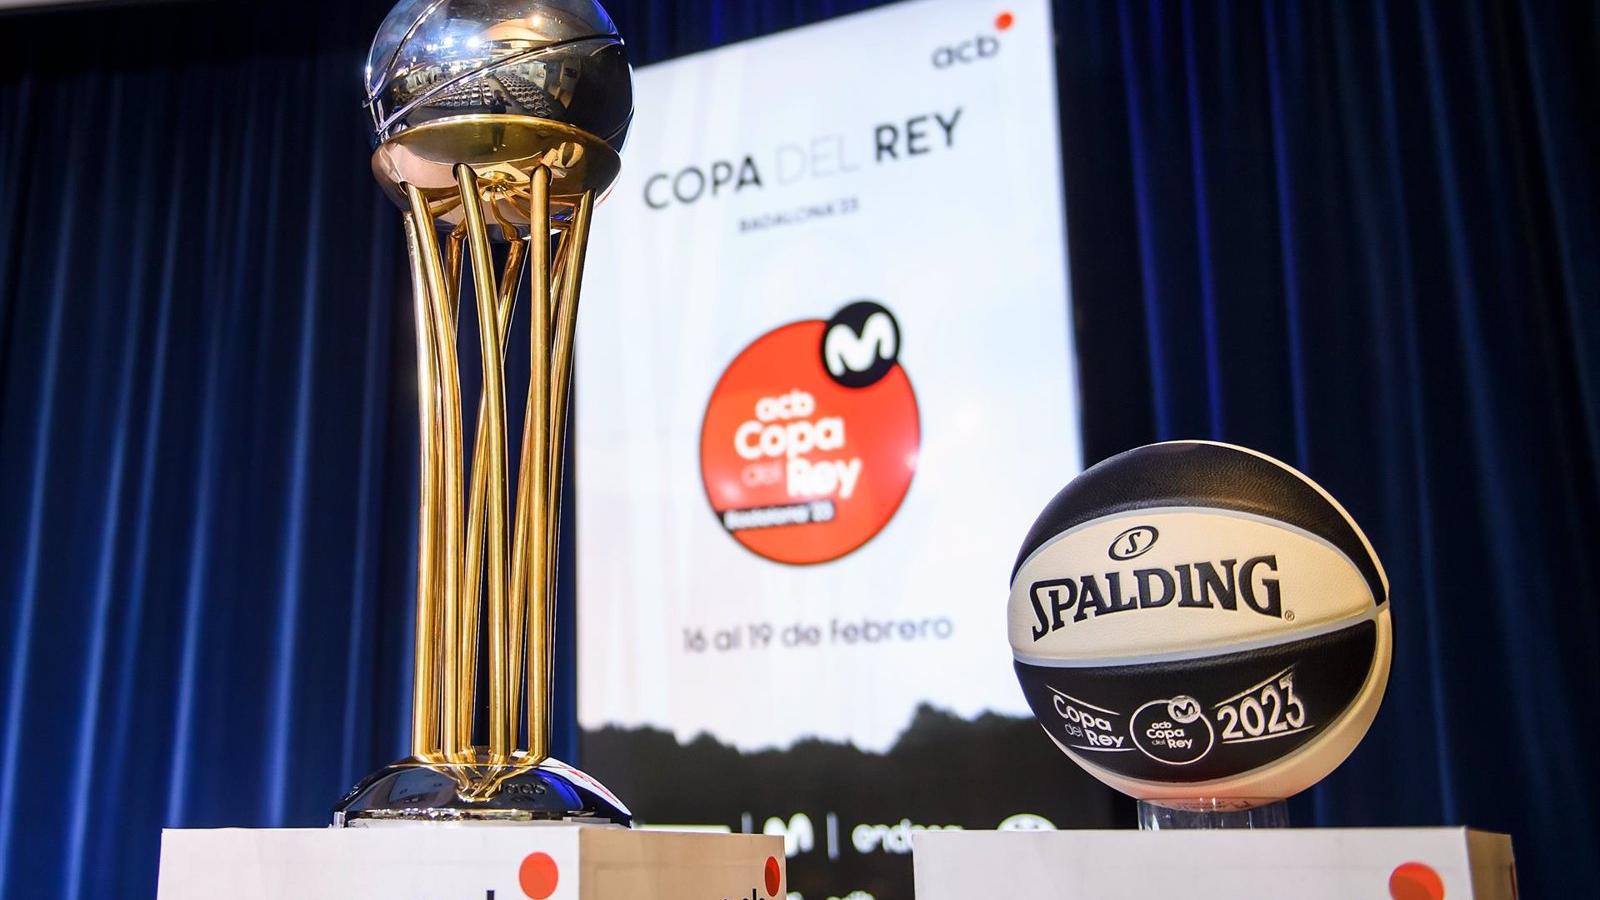 La Copa de Badalona 2023 será la más internacional de la historia